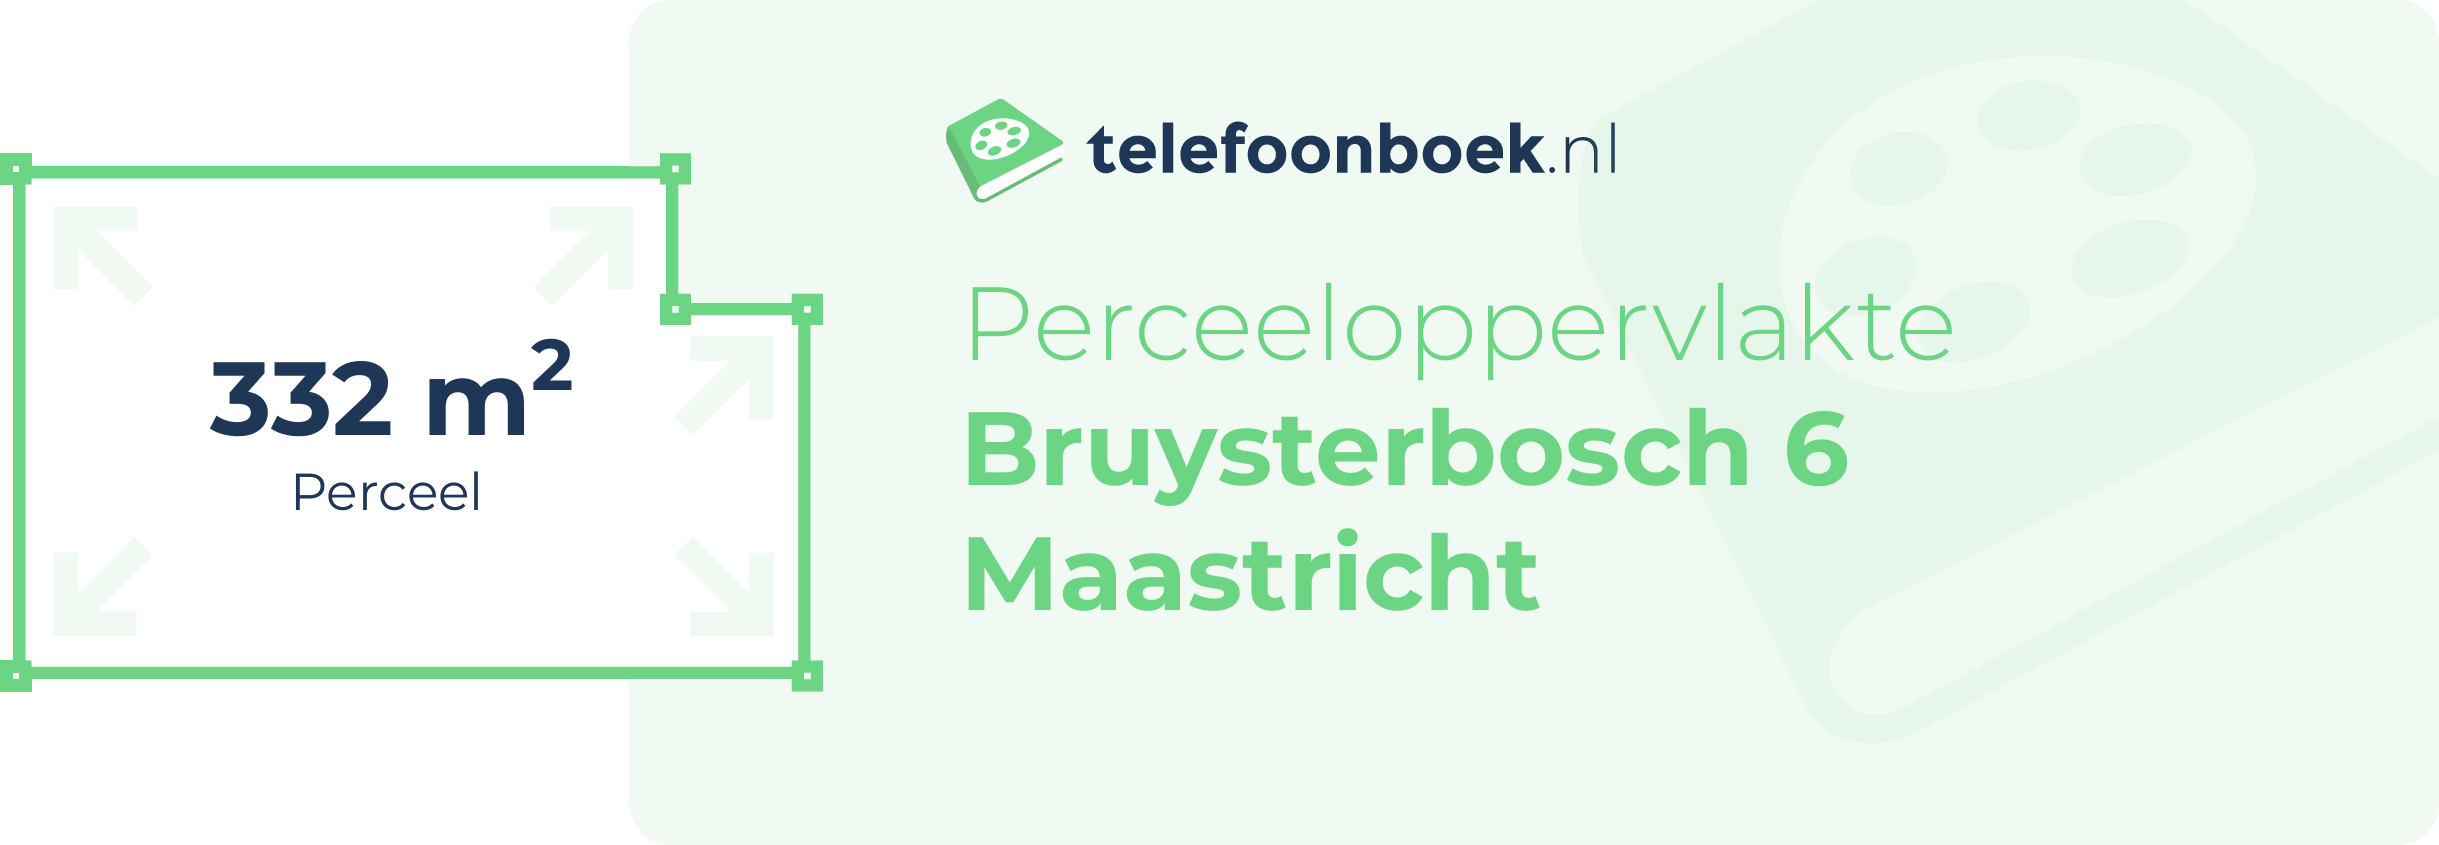 Perceeloppervlakte Bruysterbosch 6 Maastricht